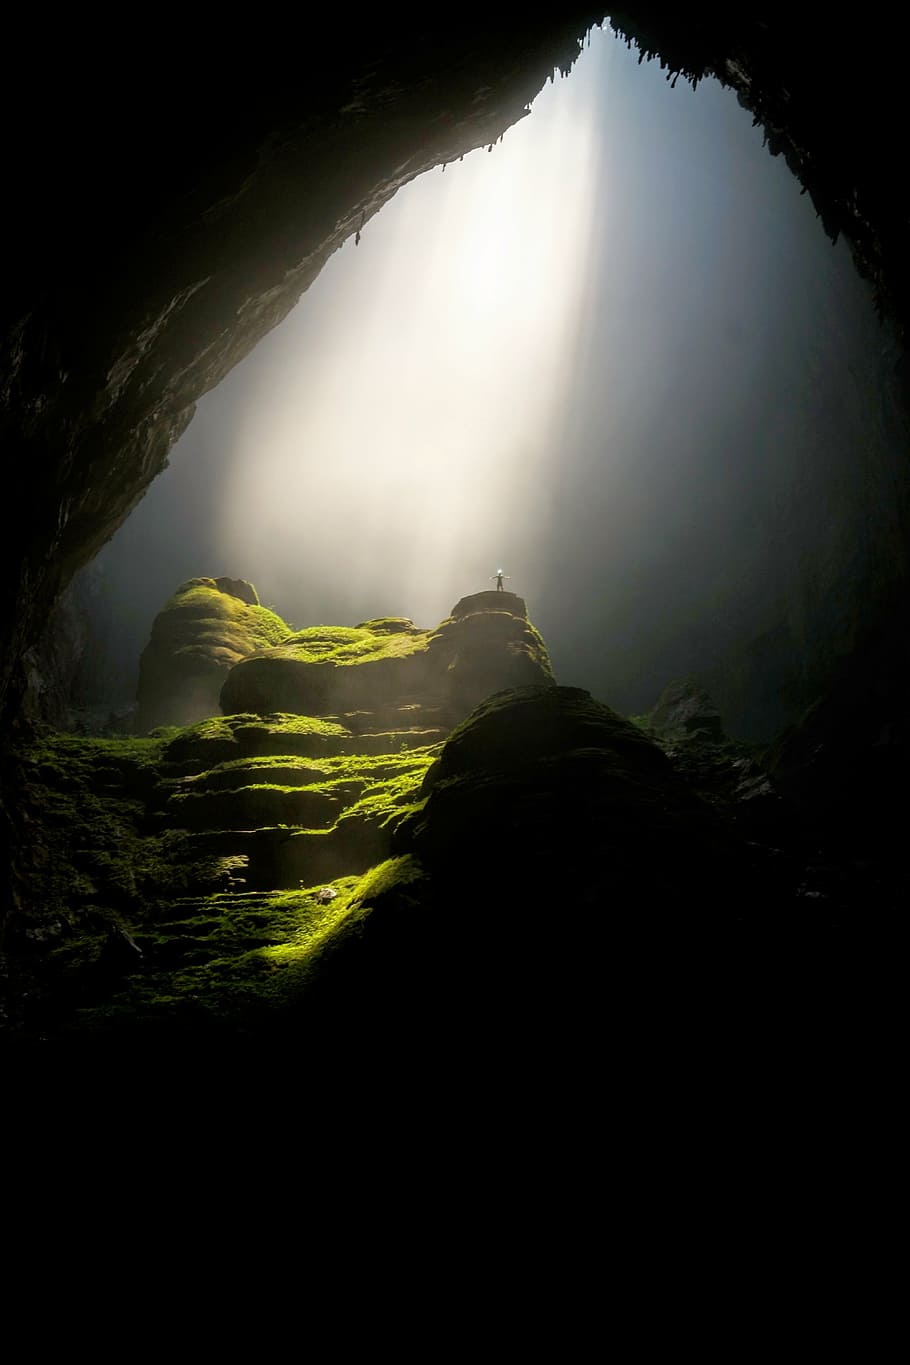 grass covered cave, cavern, dark, daylight, landscape, moss, nature, HD wallpaper